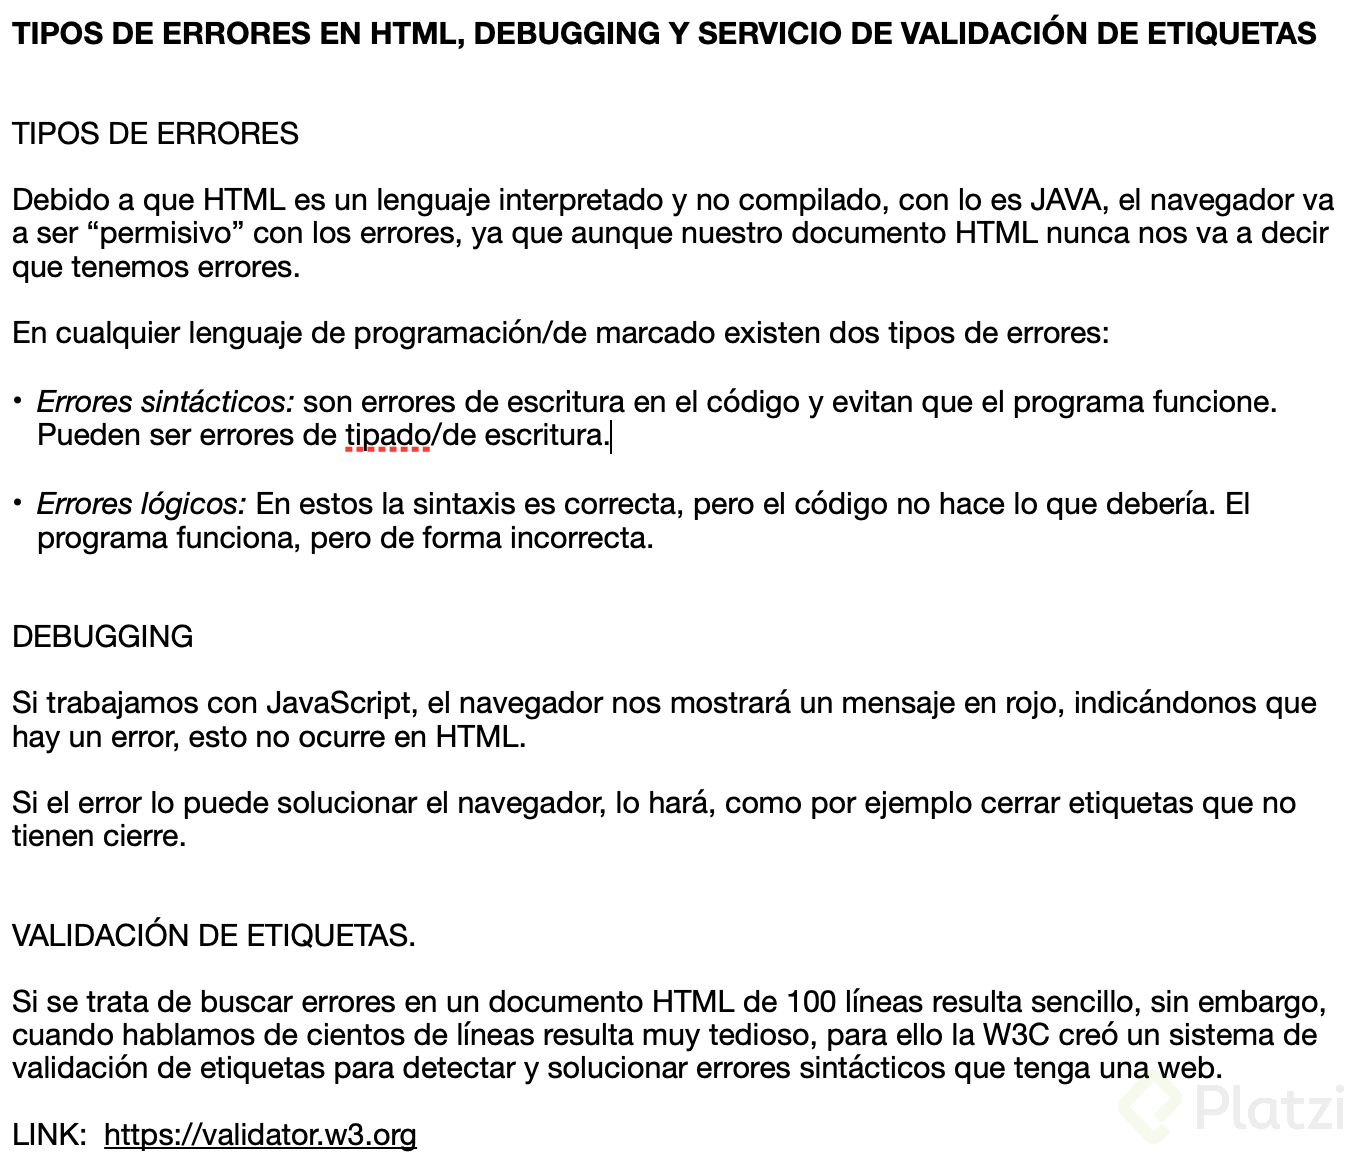 Juanc Cumbe - TIPOS DE ERRORES EN HTML, DEBUGGING Y SERVICIO DE VALIDACIOÌ�N DE ETIQUETAS.png